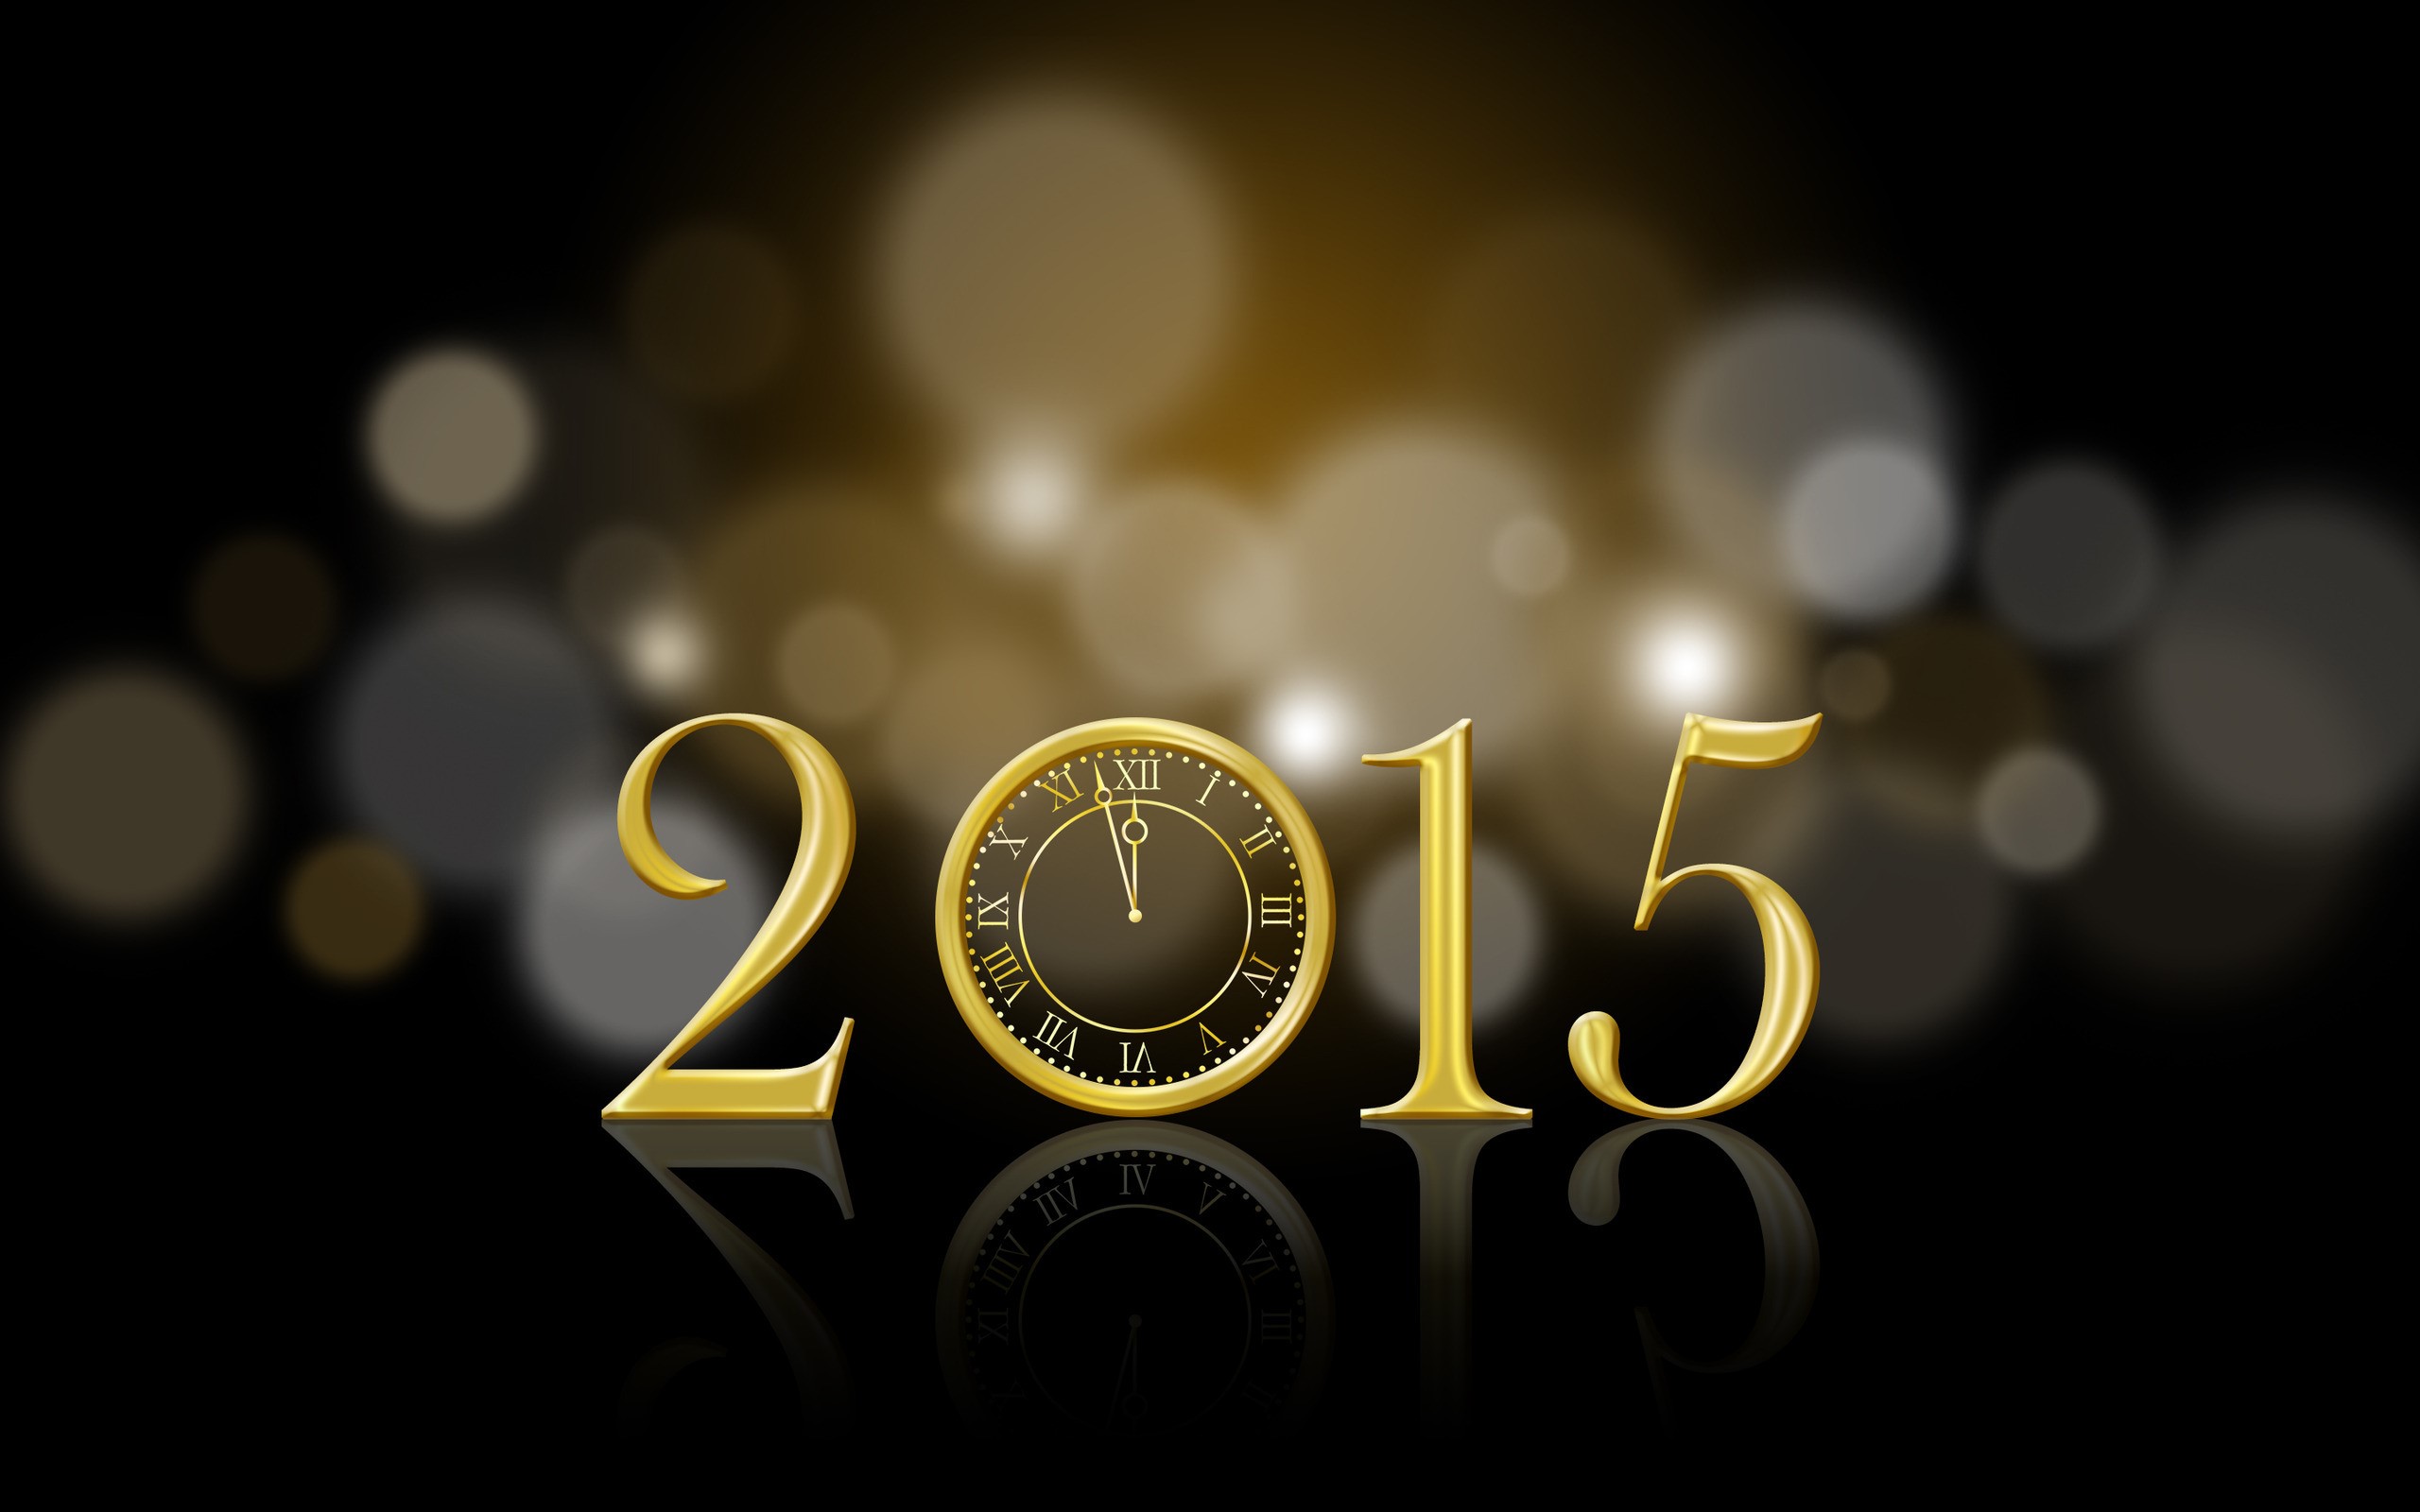 Скачать обои Новый Год 2015 на телефон бесплатно